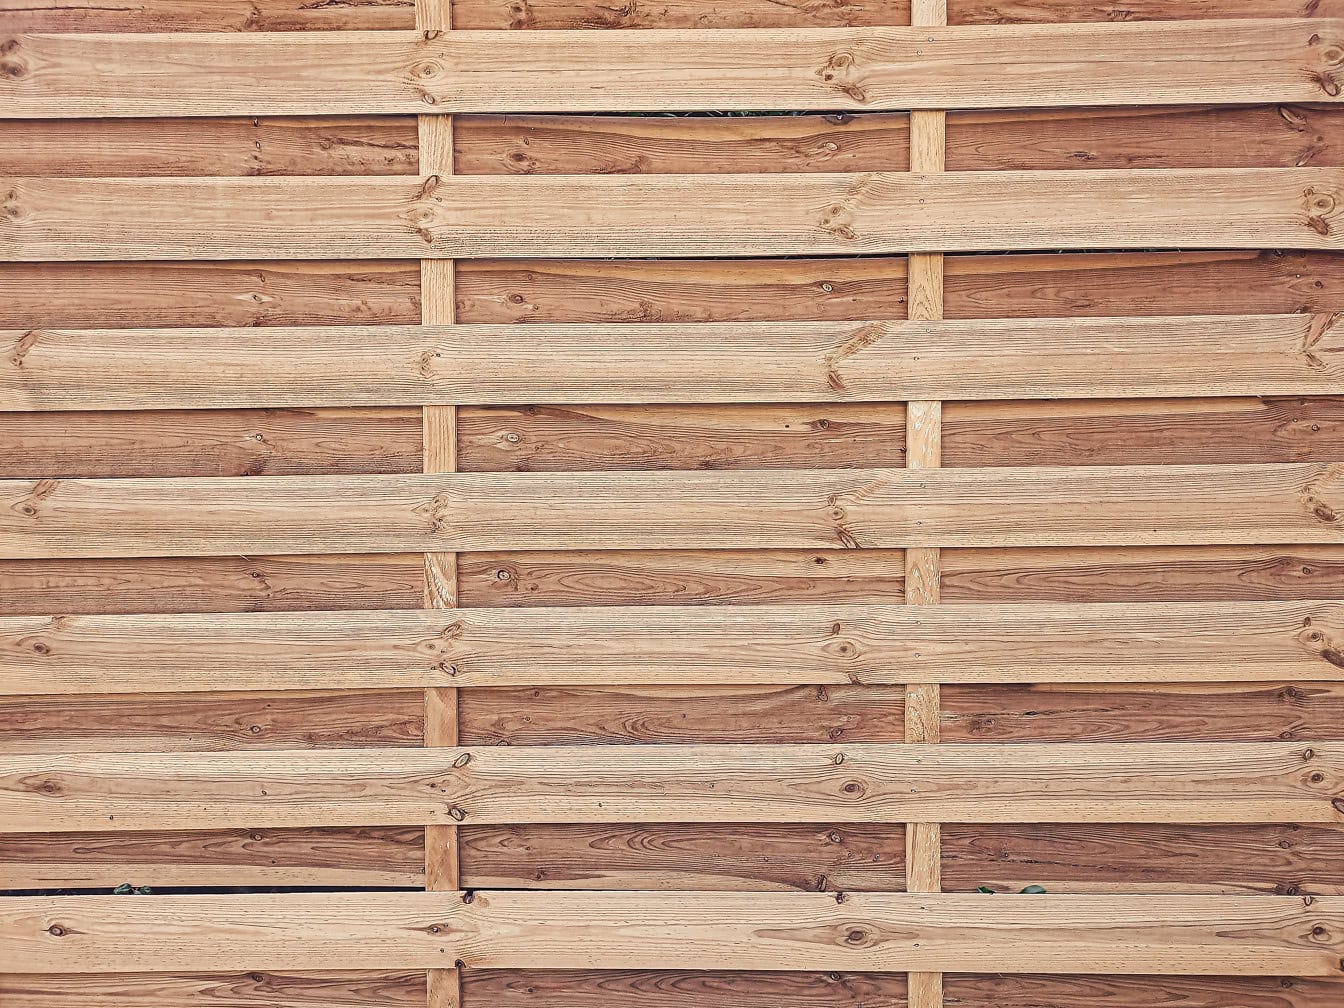 Текстура деревенской деревянной щитовой доски из горизонтально уложенных тонких сосновых реек